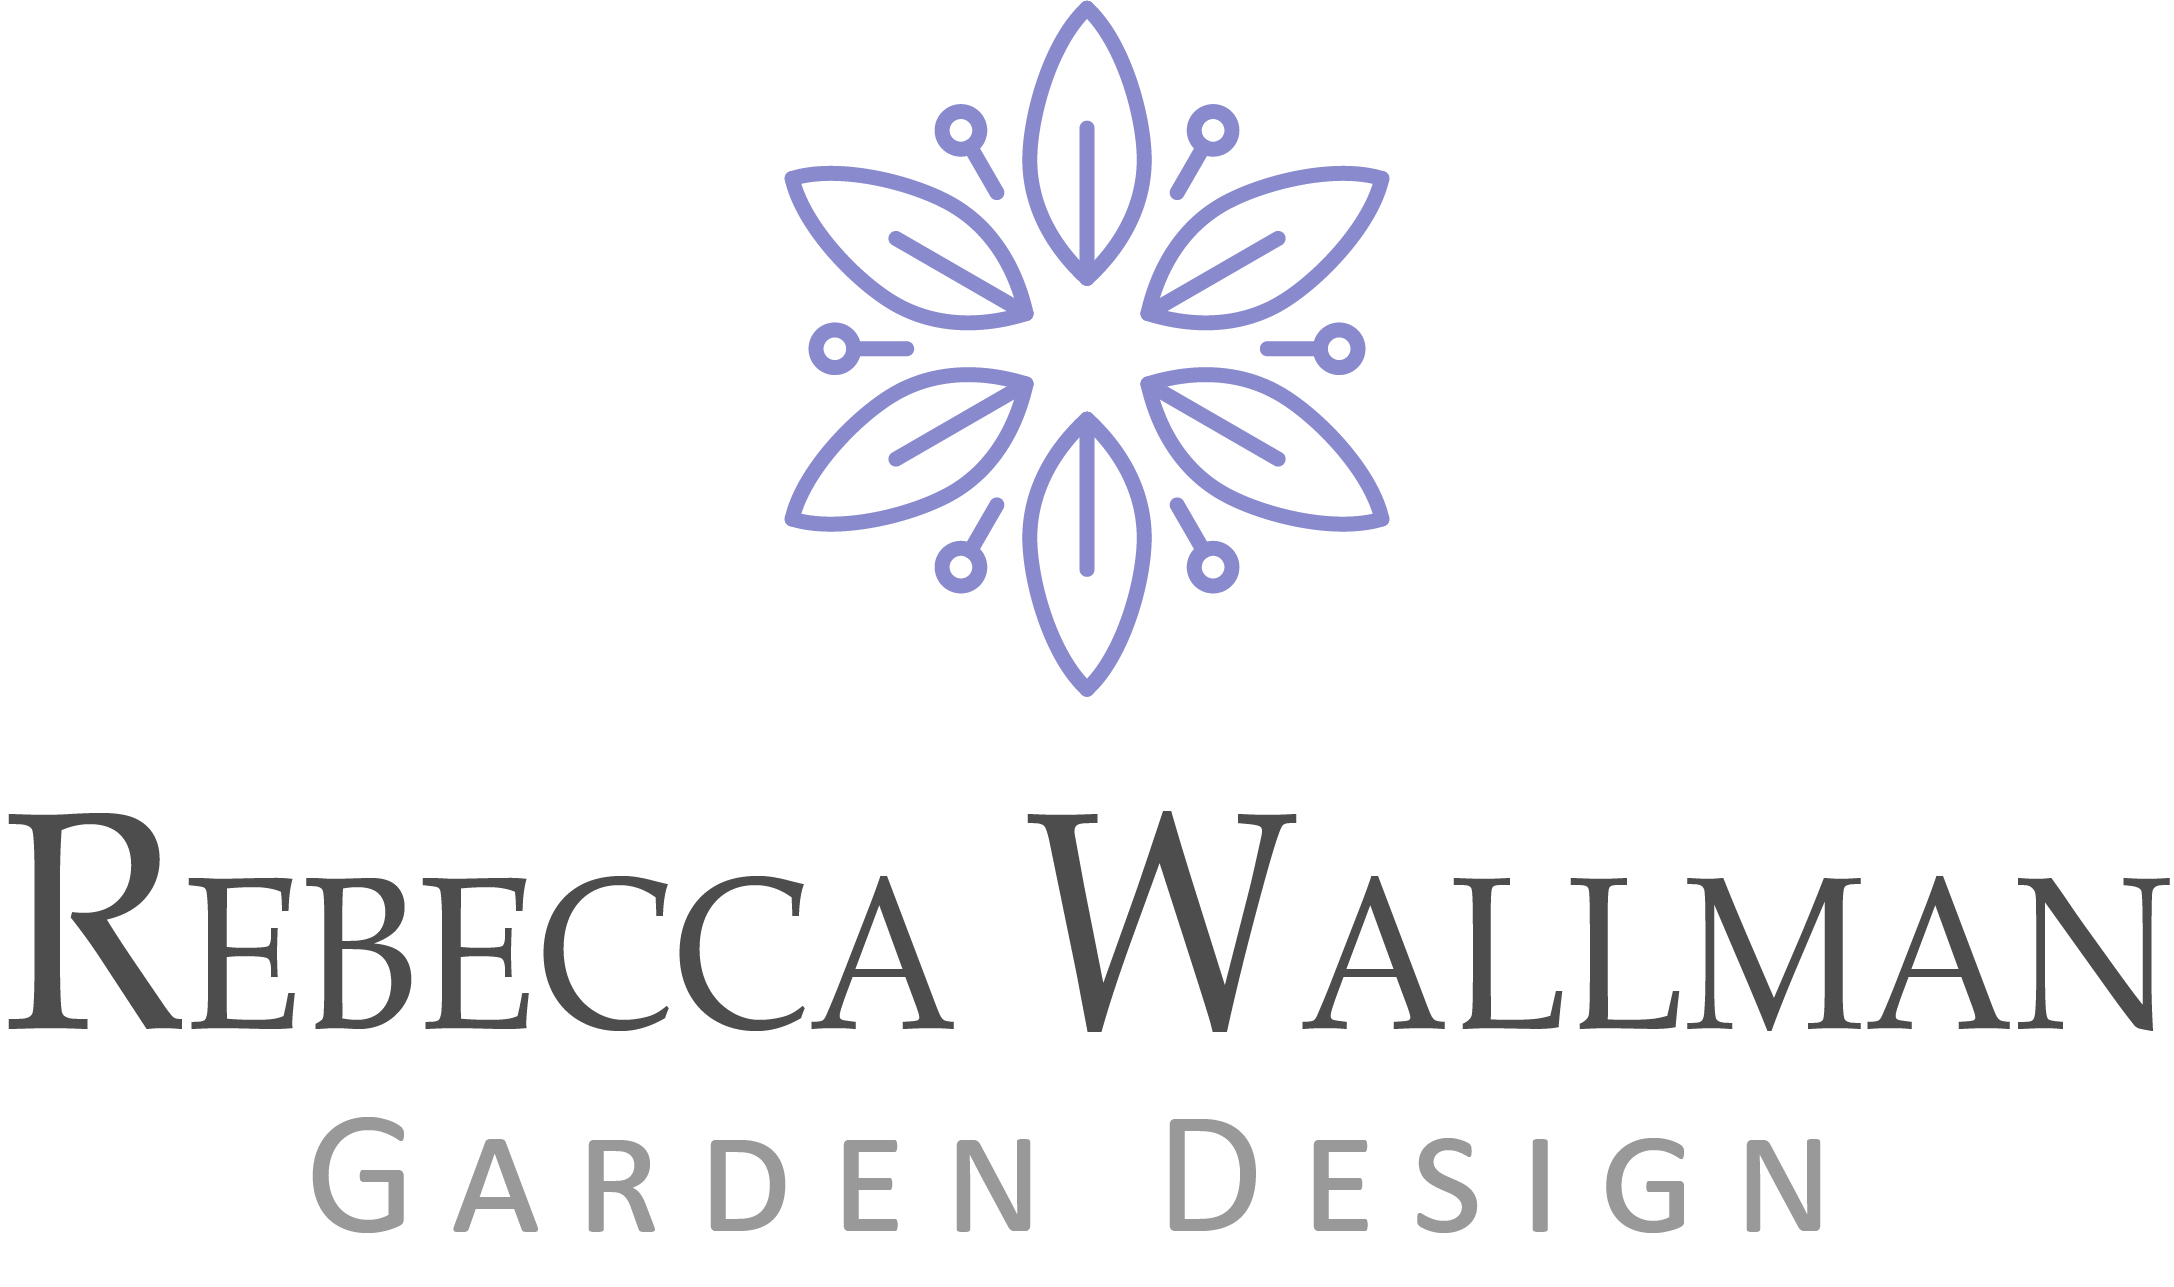 Rebecca Wallman Garden Design | About